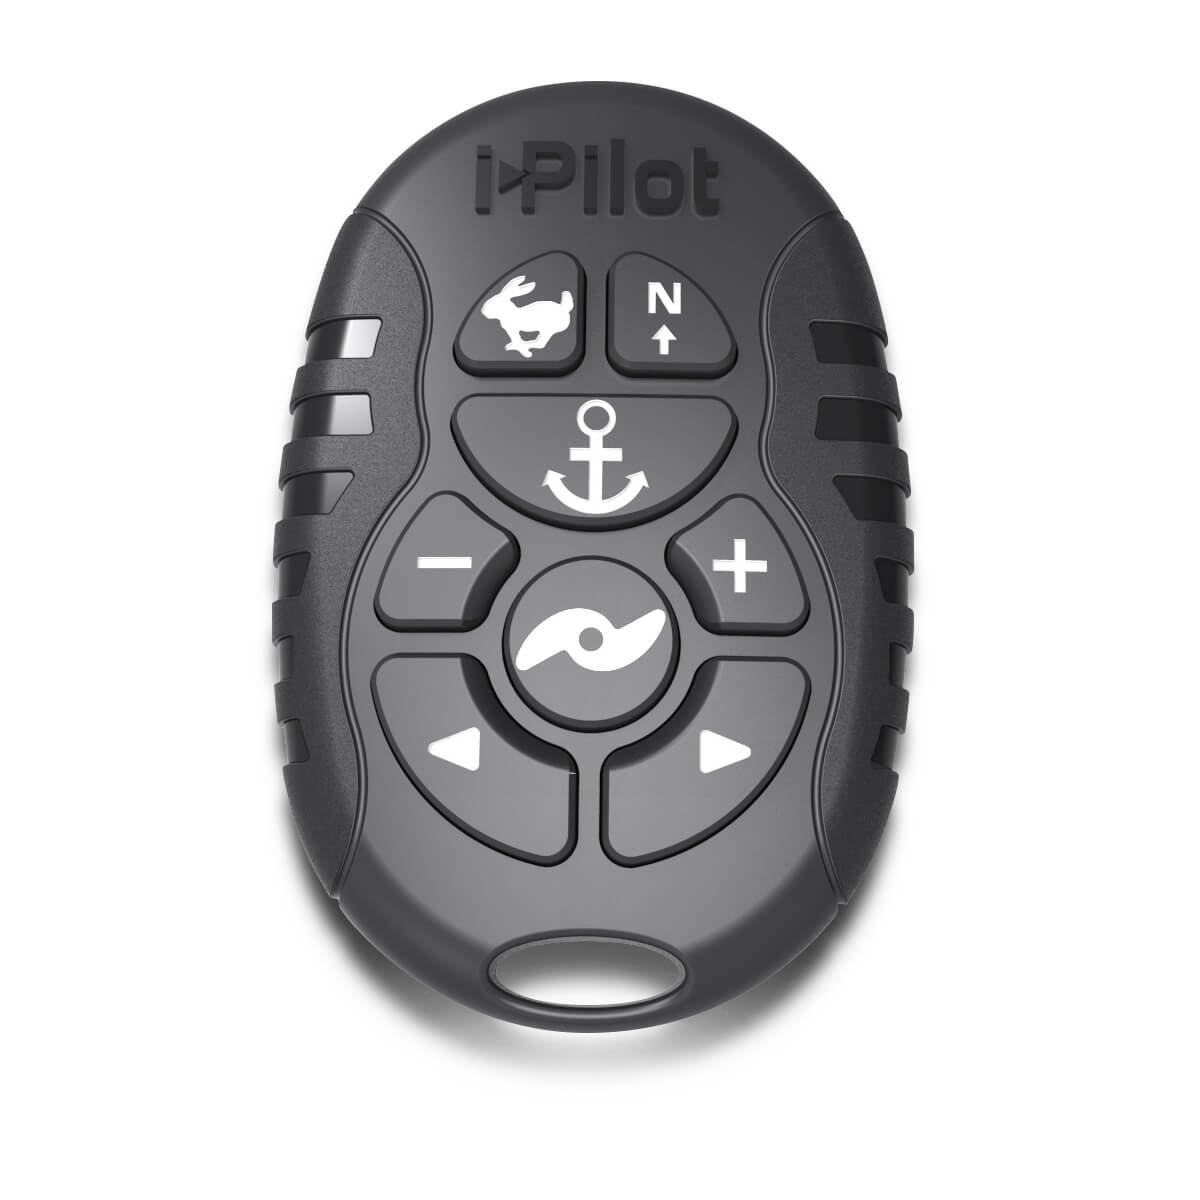 Minn Kota Micro Remote-Bluetooth